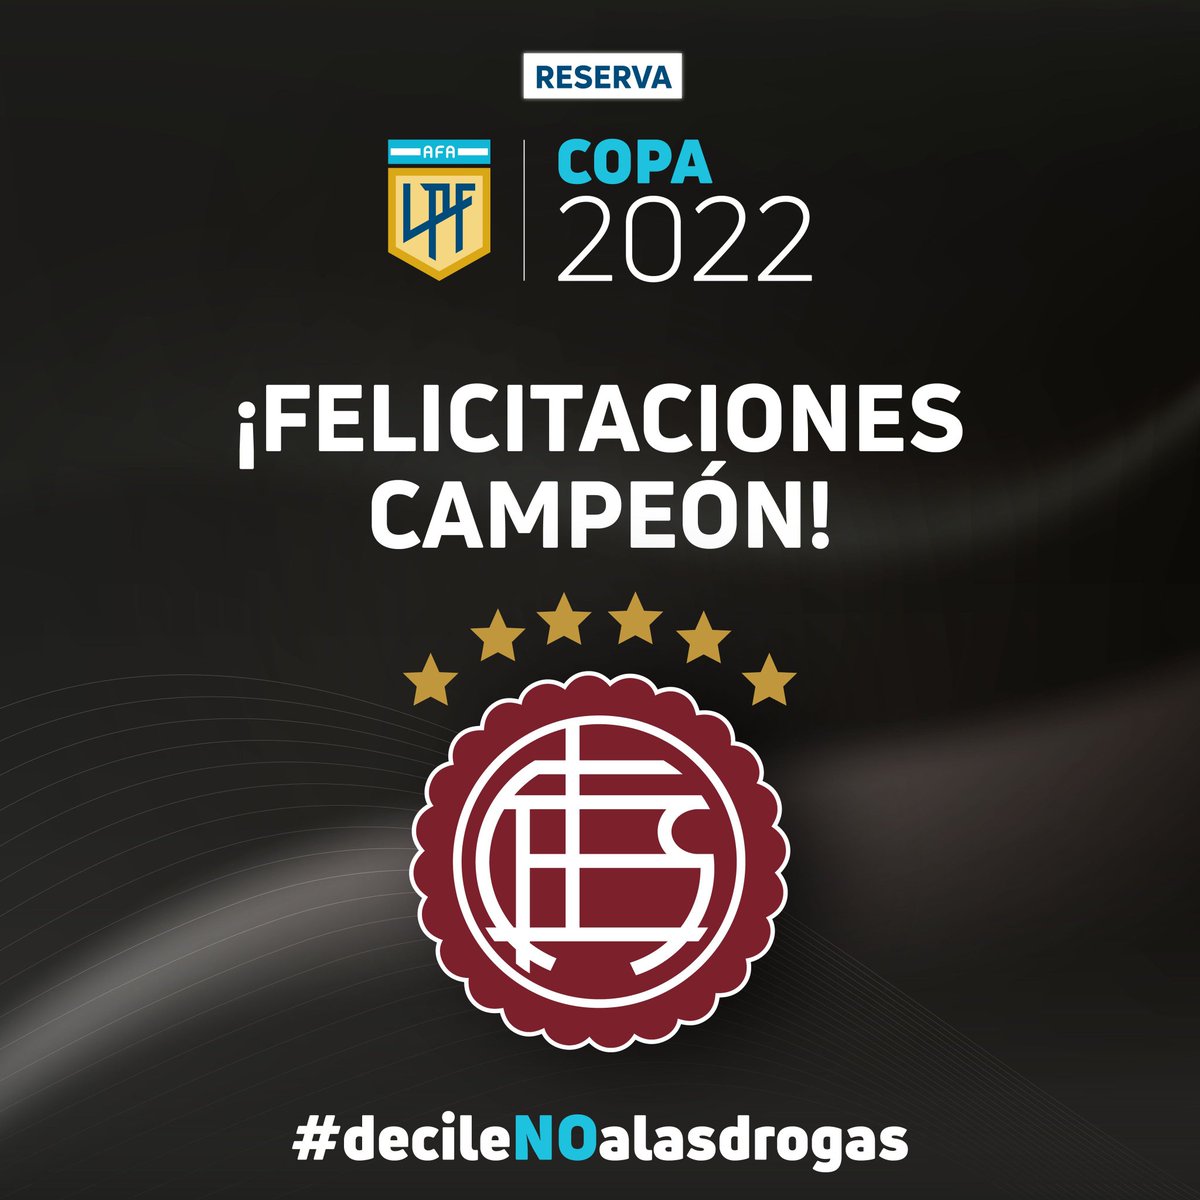 #ReservaLPF:
Porque Lanús derrotó a Estudiantes y se consagró campeón de la #CopaDeLaLiga